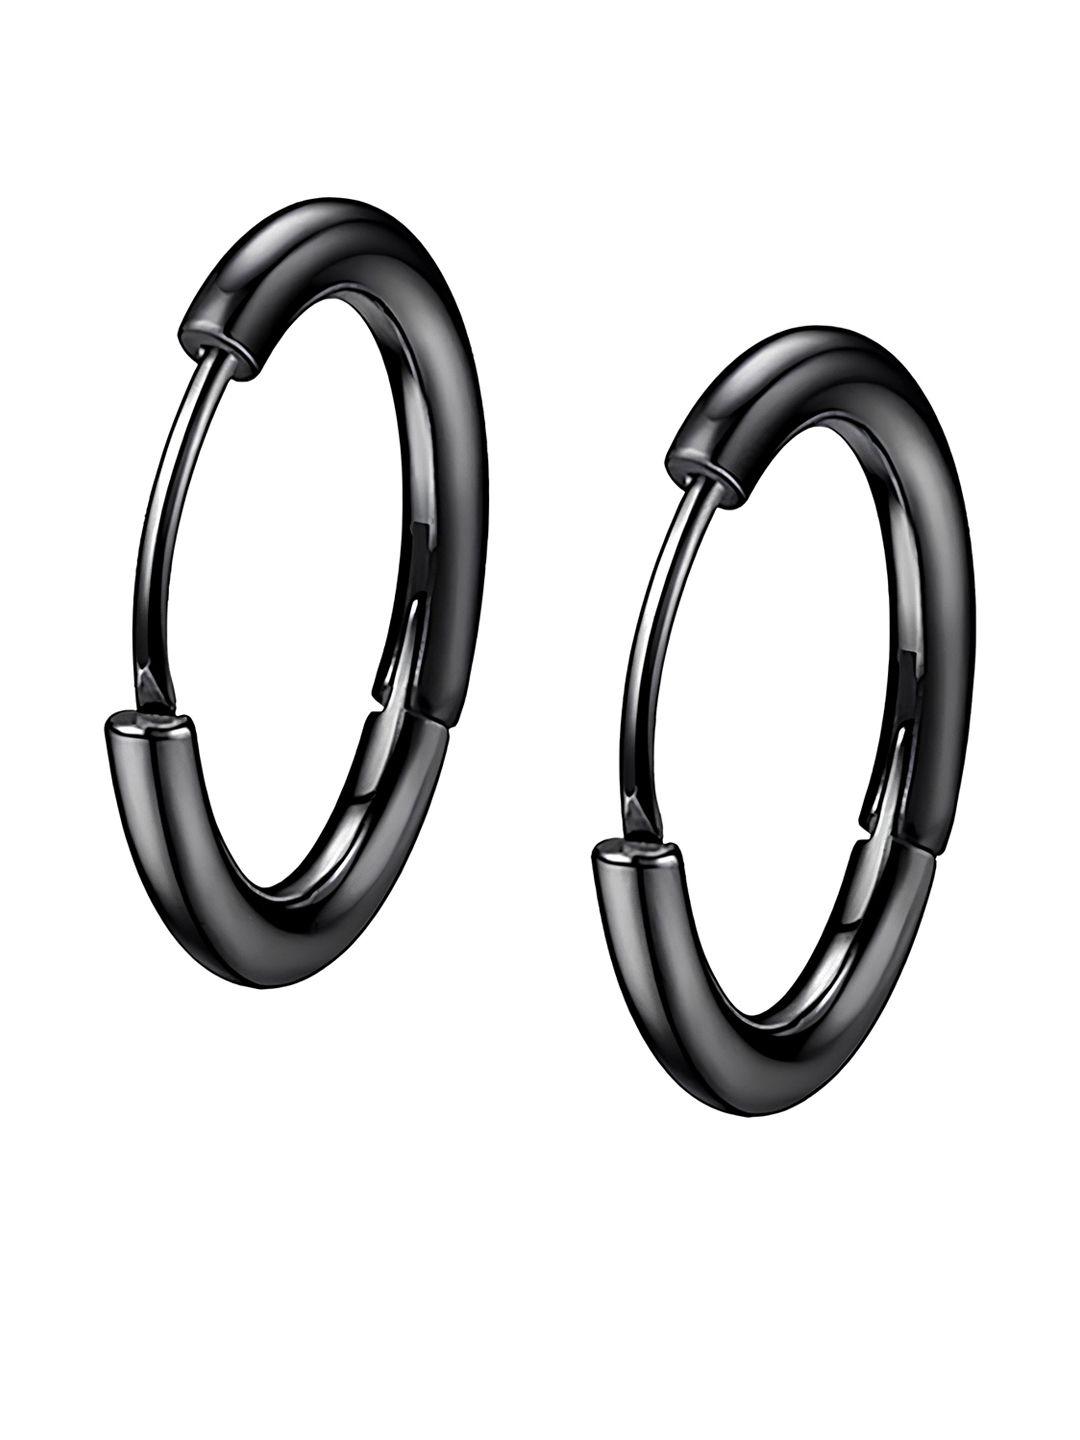 karishma kreations contemporary stainless steel half hoop earrings